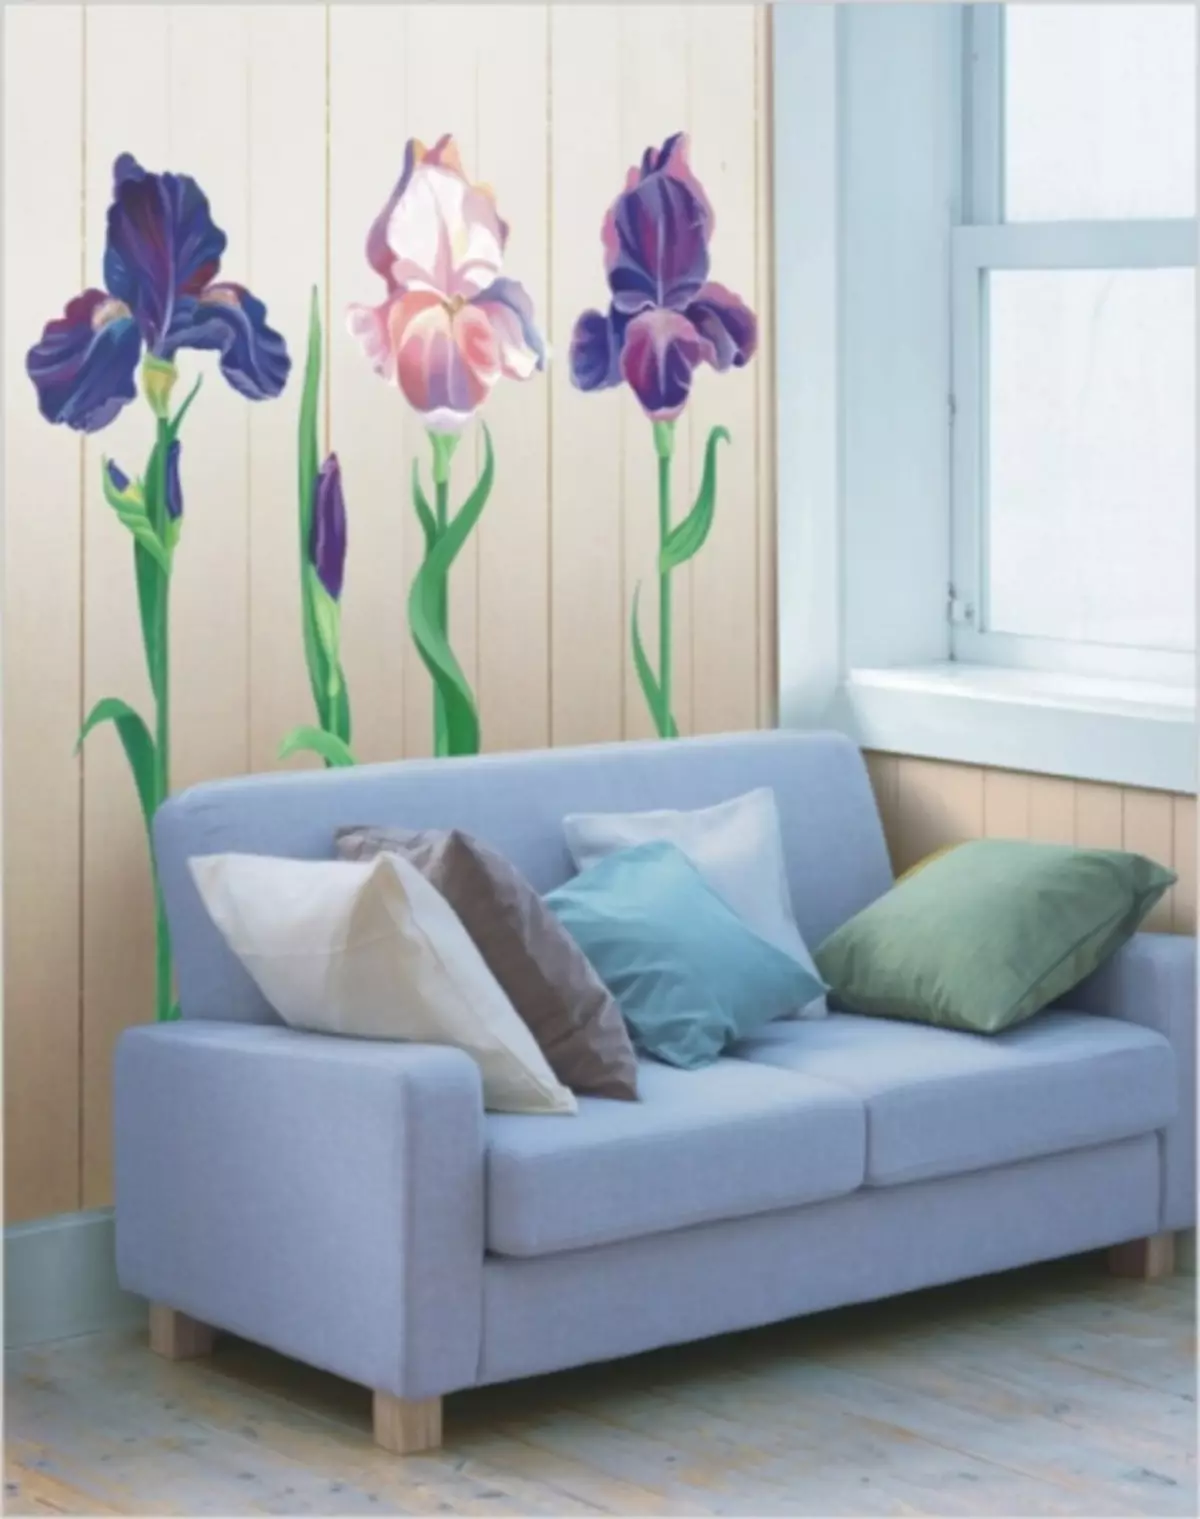 קיר, פרחים, פנים,: 100 תמונות של הדפסים פרחוניים על הקיר